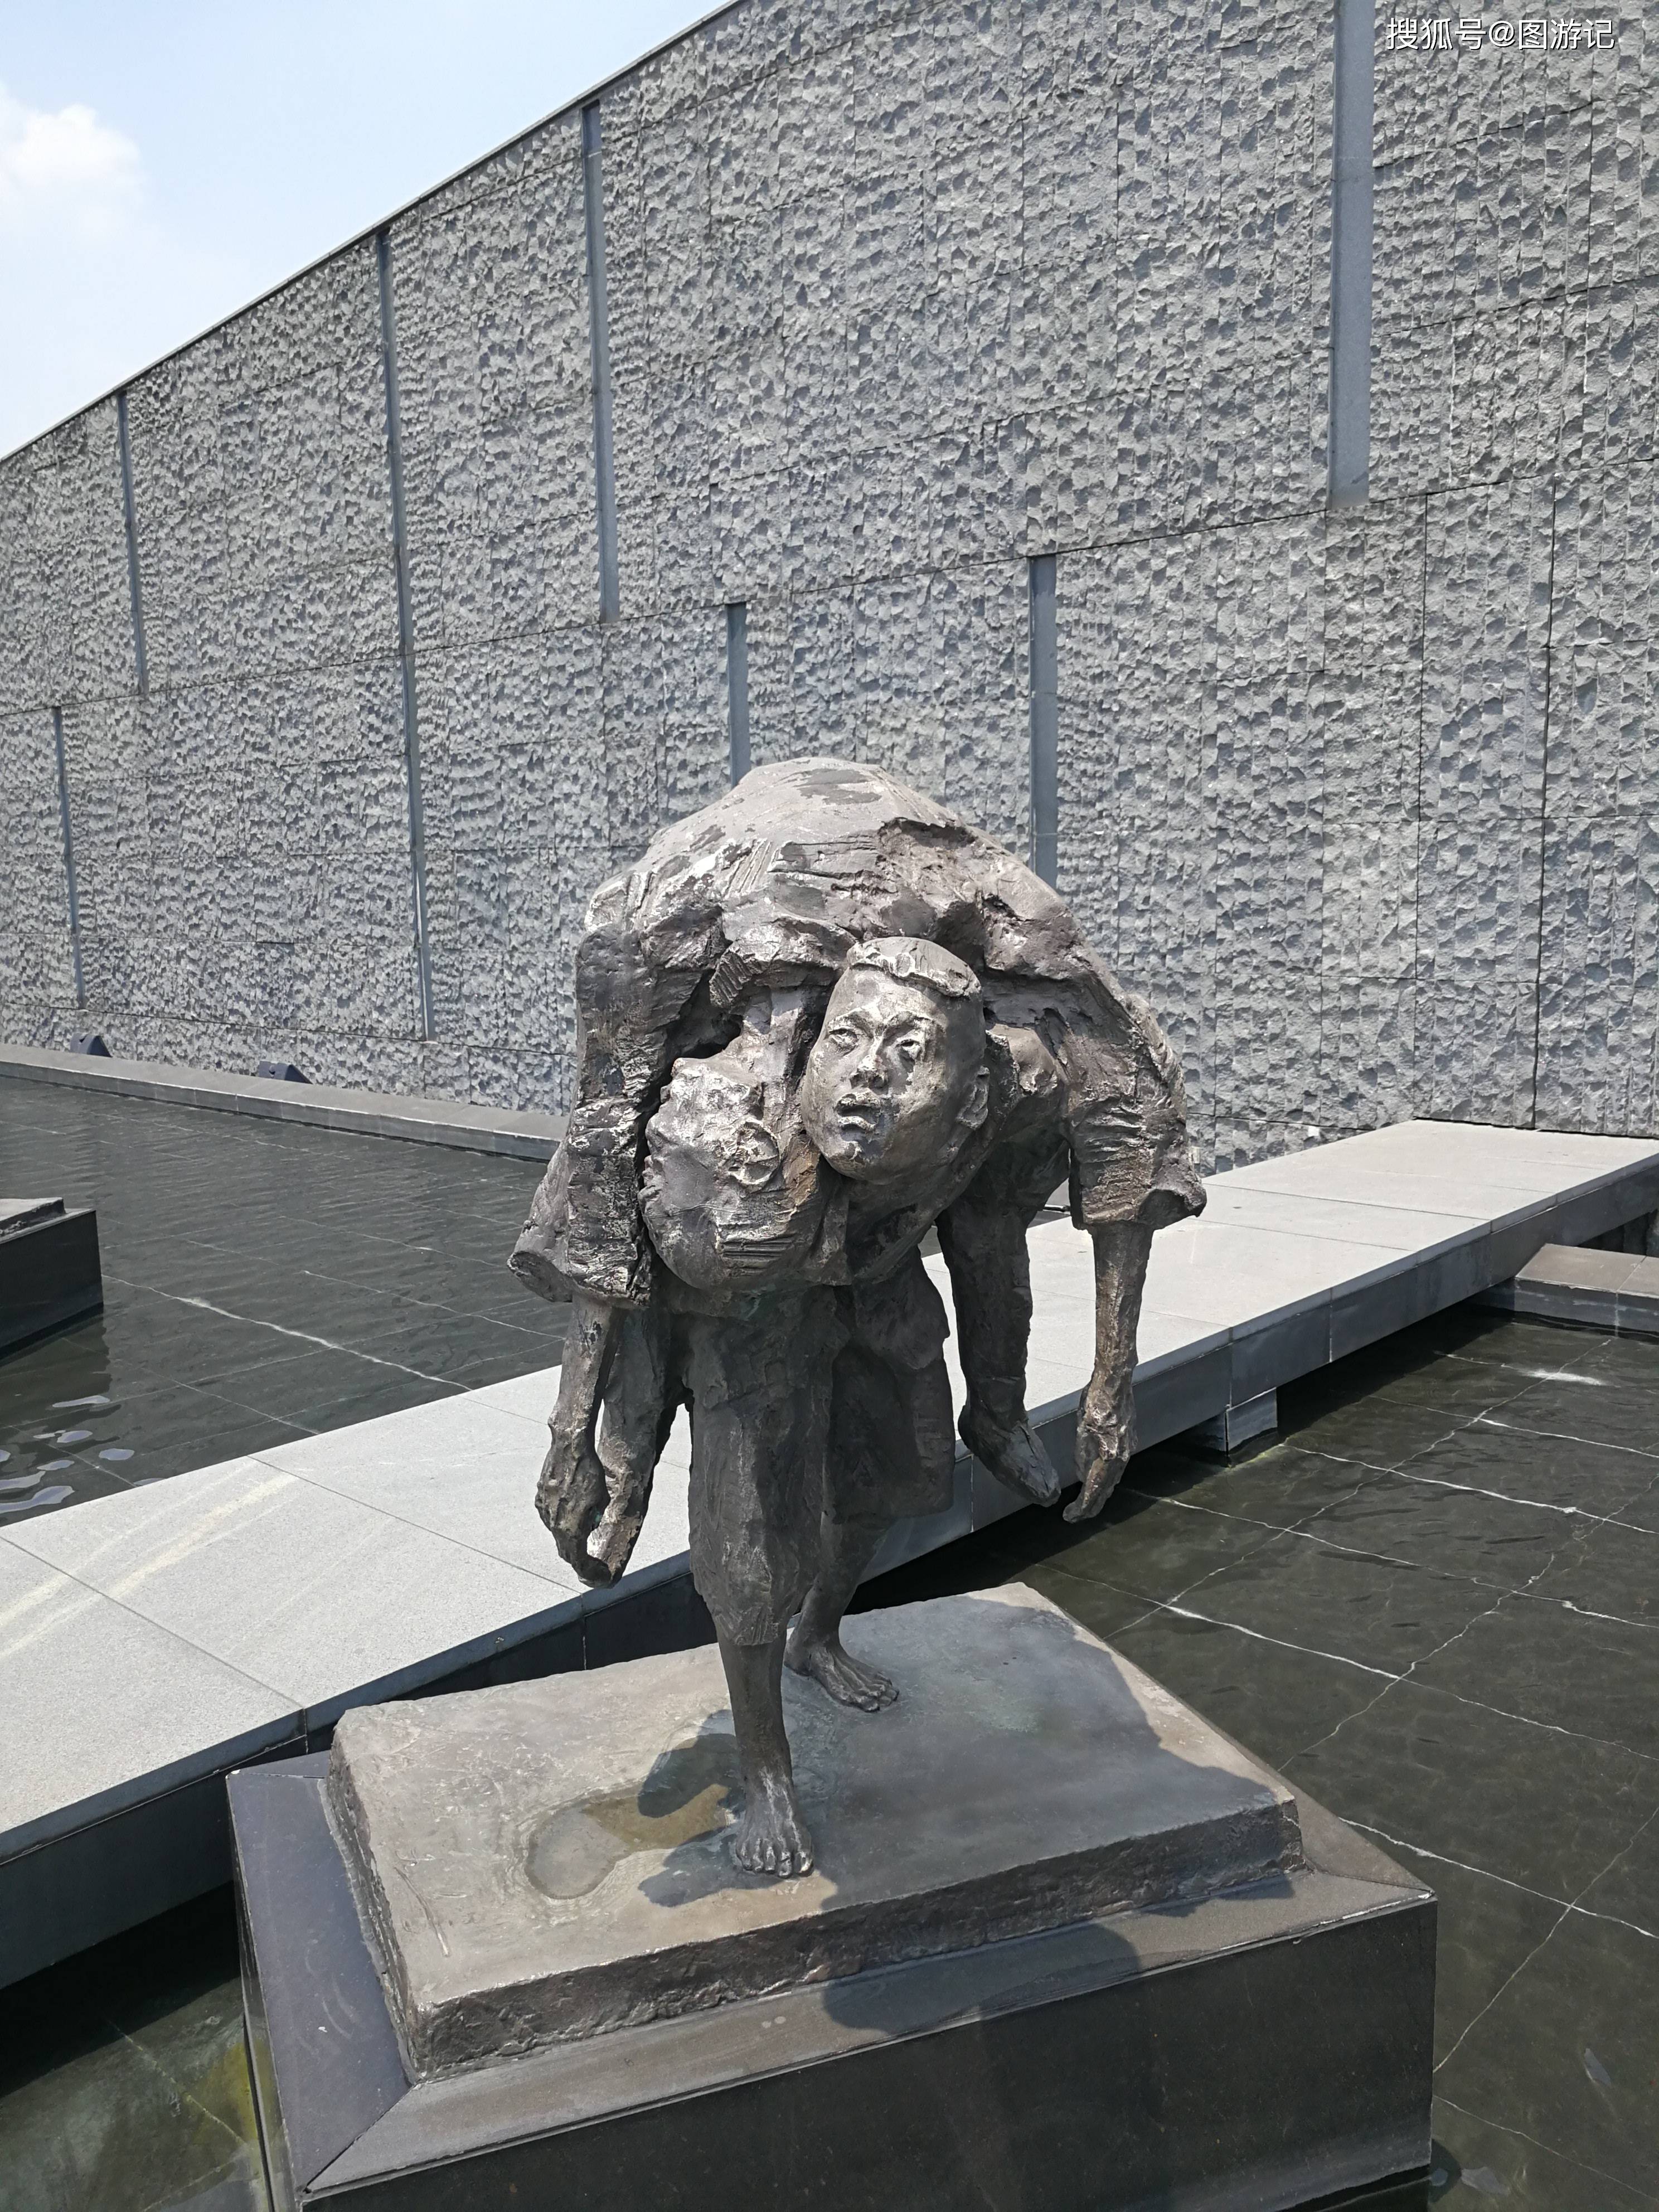 南京大屠杀遇难同胞纪念馆,铭记历史,珍爱和平